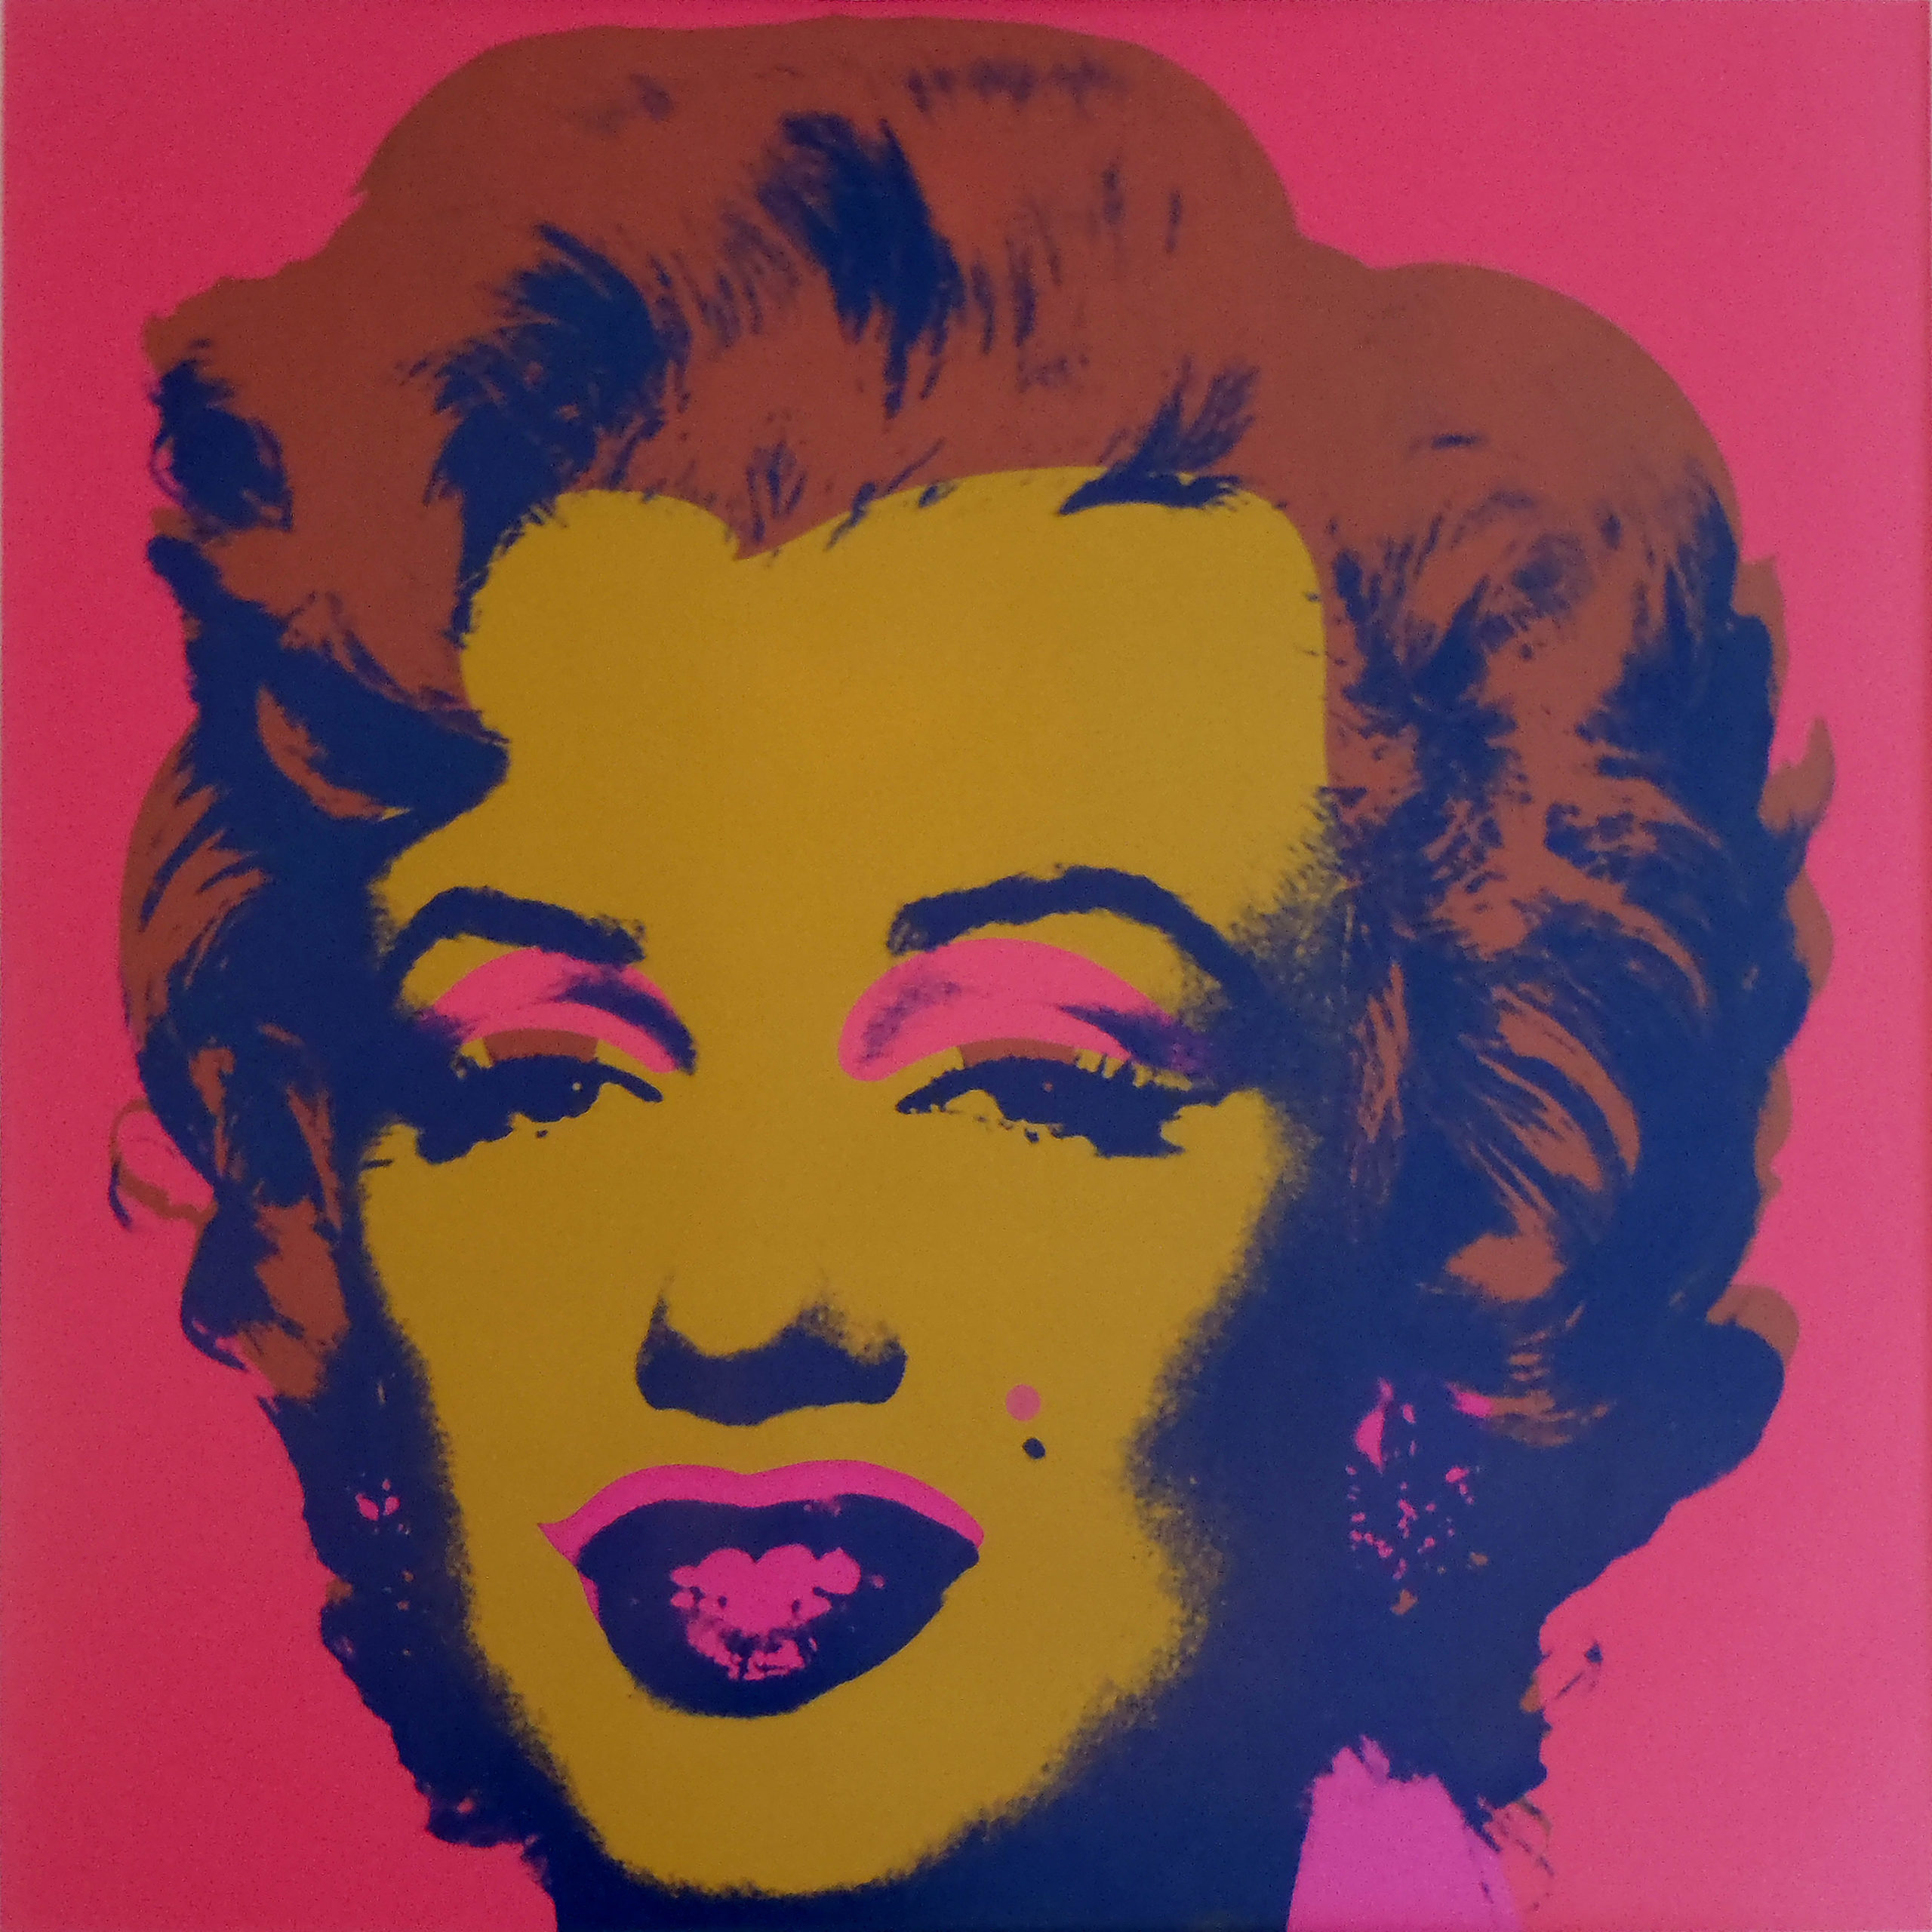 Andy Warhol | Marilyn Monroe (Marilyn), II.27 | 1967 | Hamilton-Selway